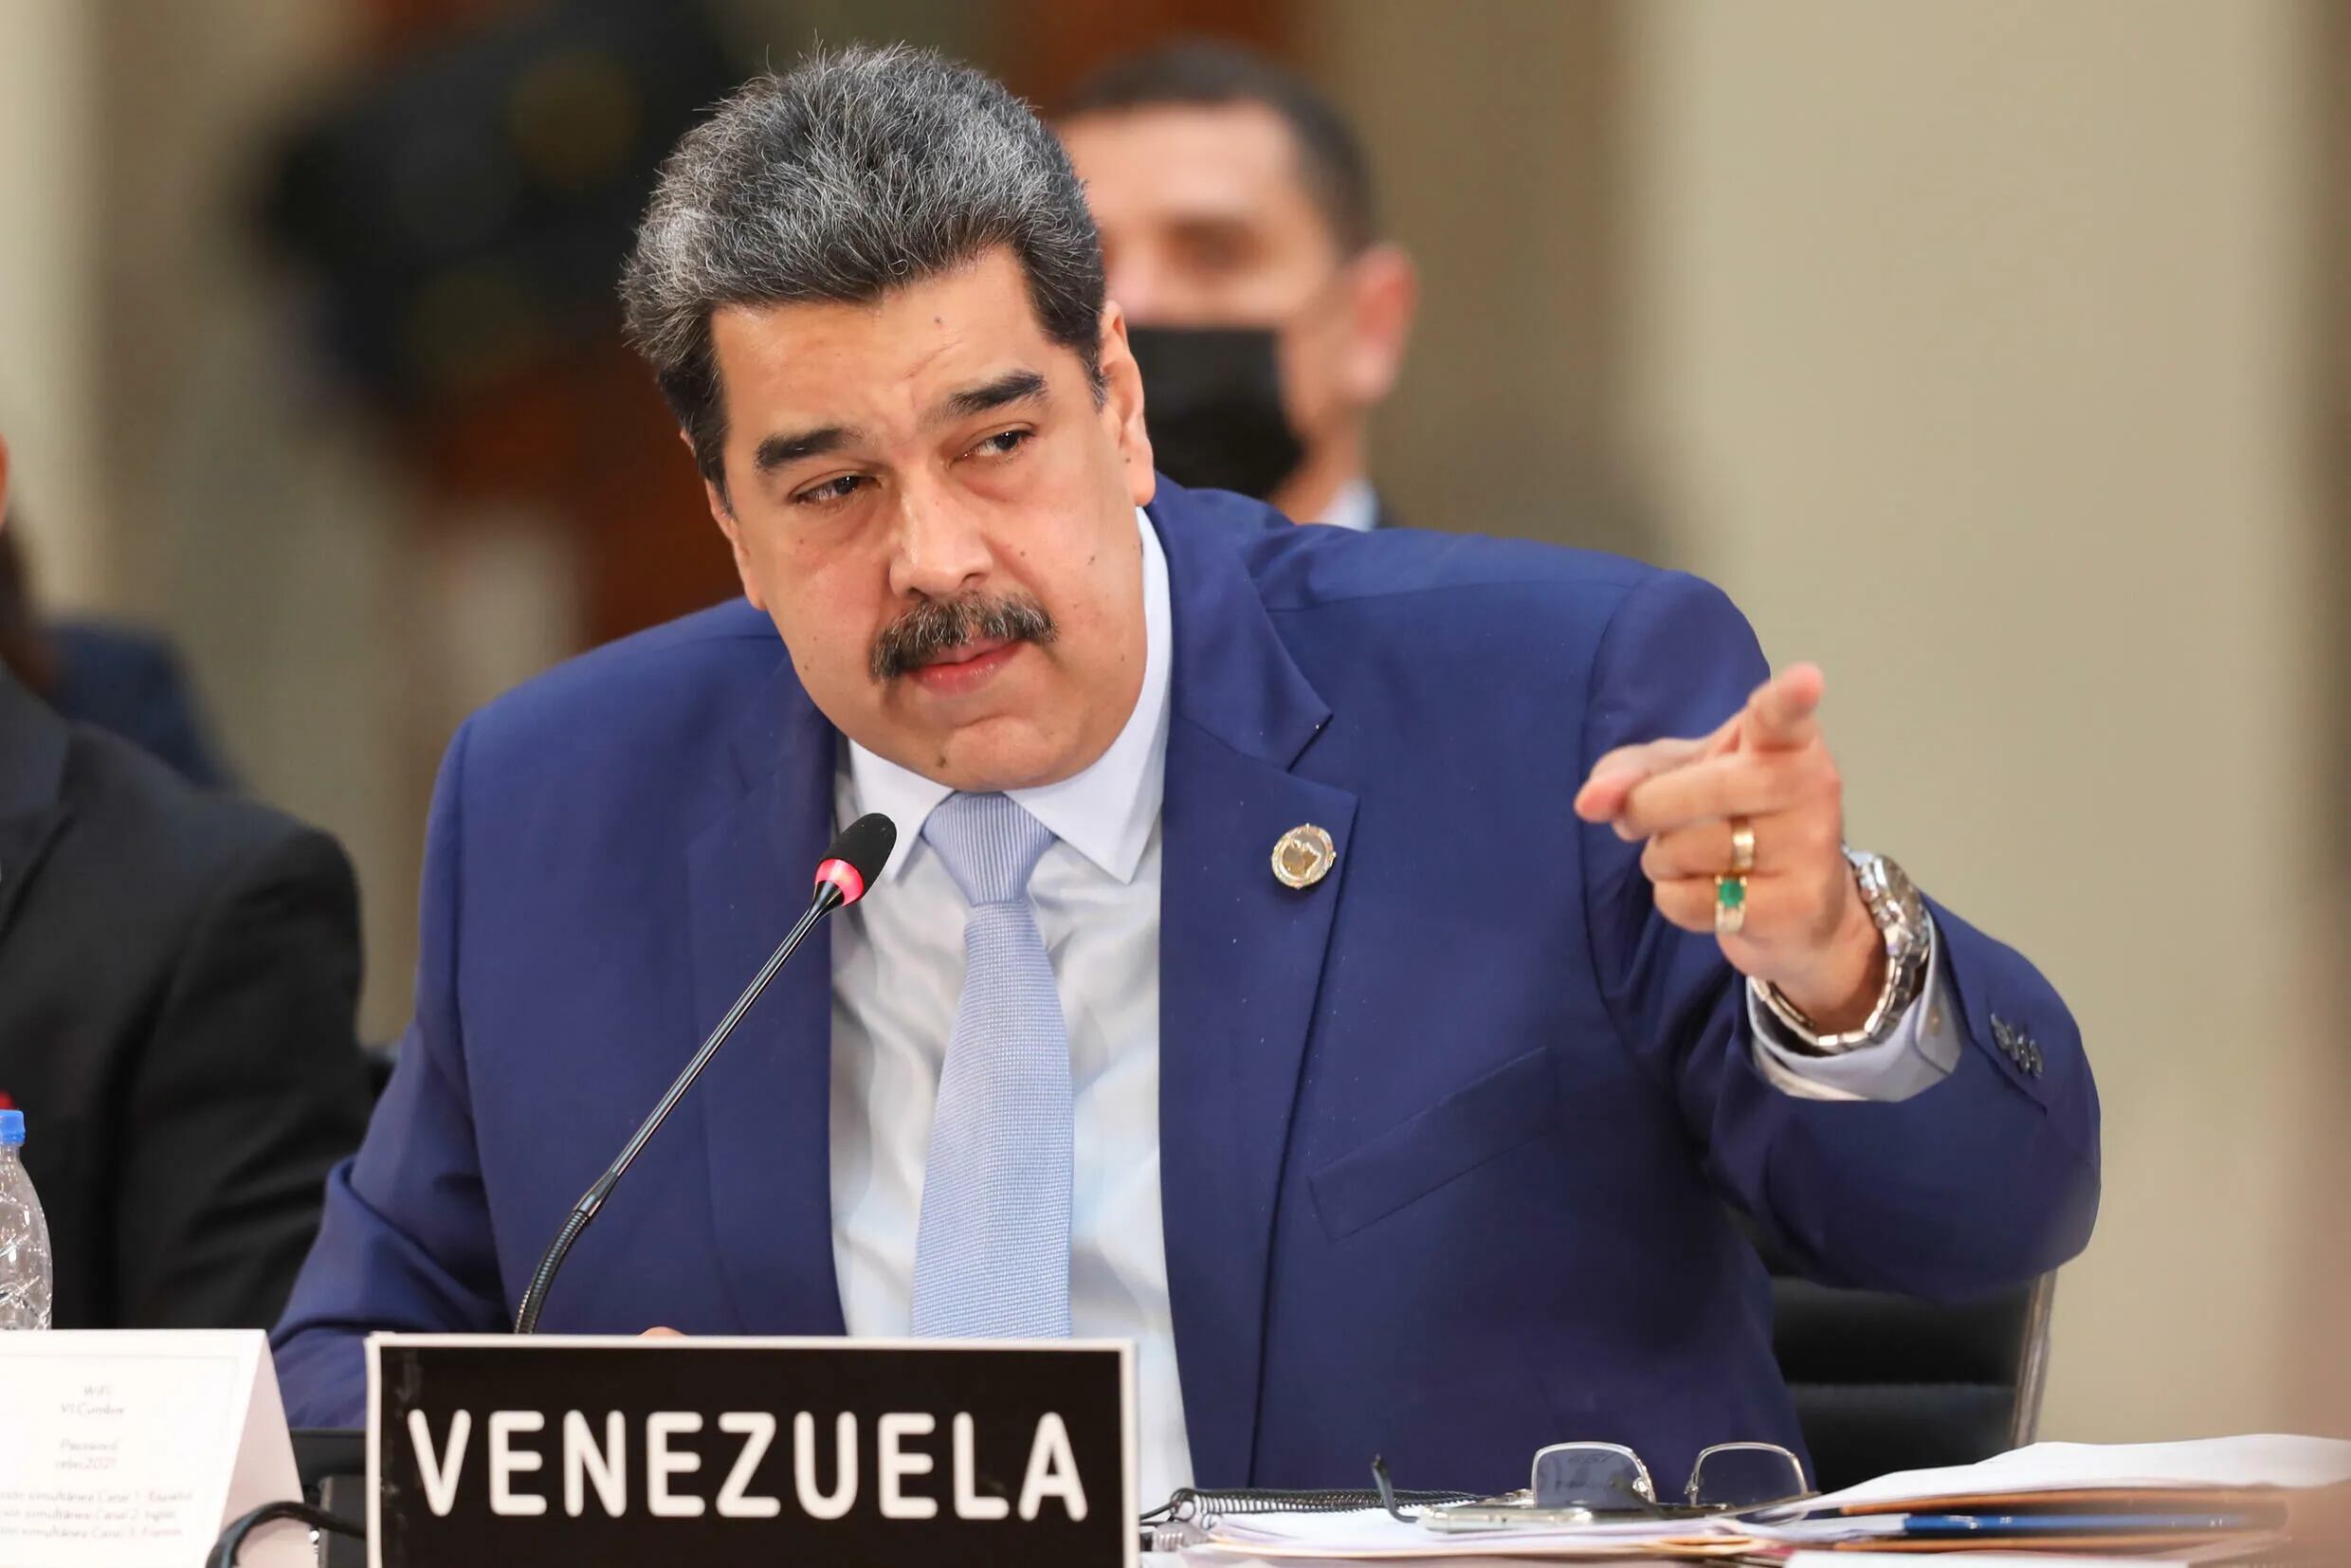 Imagen de archivo difundida por la Presidencia de Venezuela que muestra al presidente Nicolás Maduro pronunciando su discurso durante la Sexta Cumbre de la Comunidad de Estados Latinoamericanos y Caribeños (CELAC) en el Palacio Nacional de México, en Ciudad de México, el 18 de septiembre de 2021